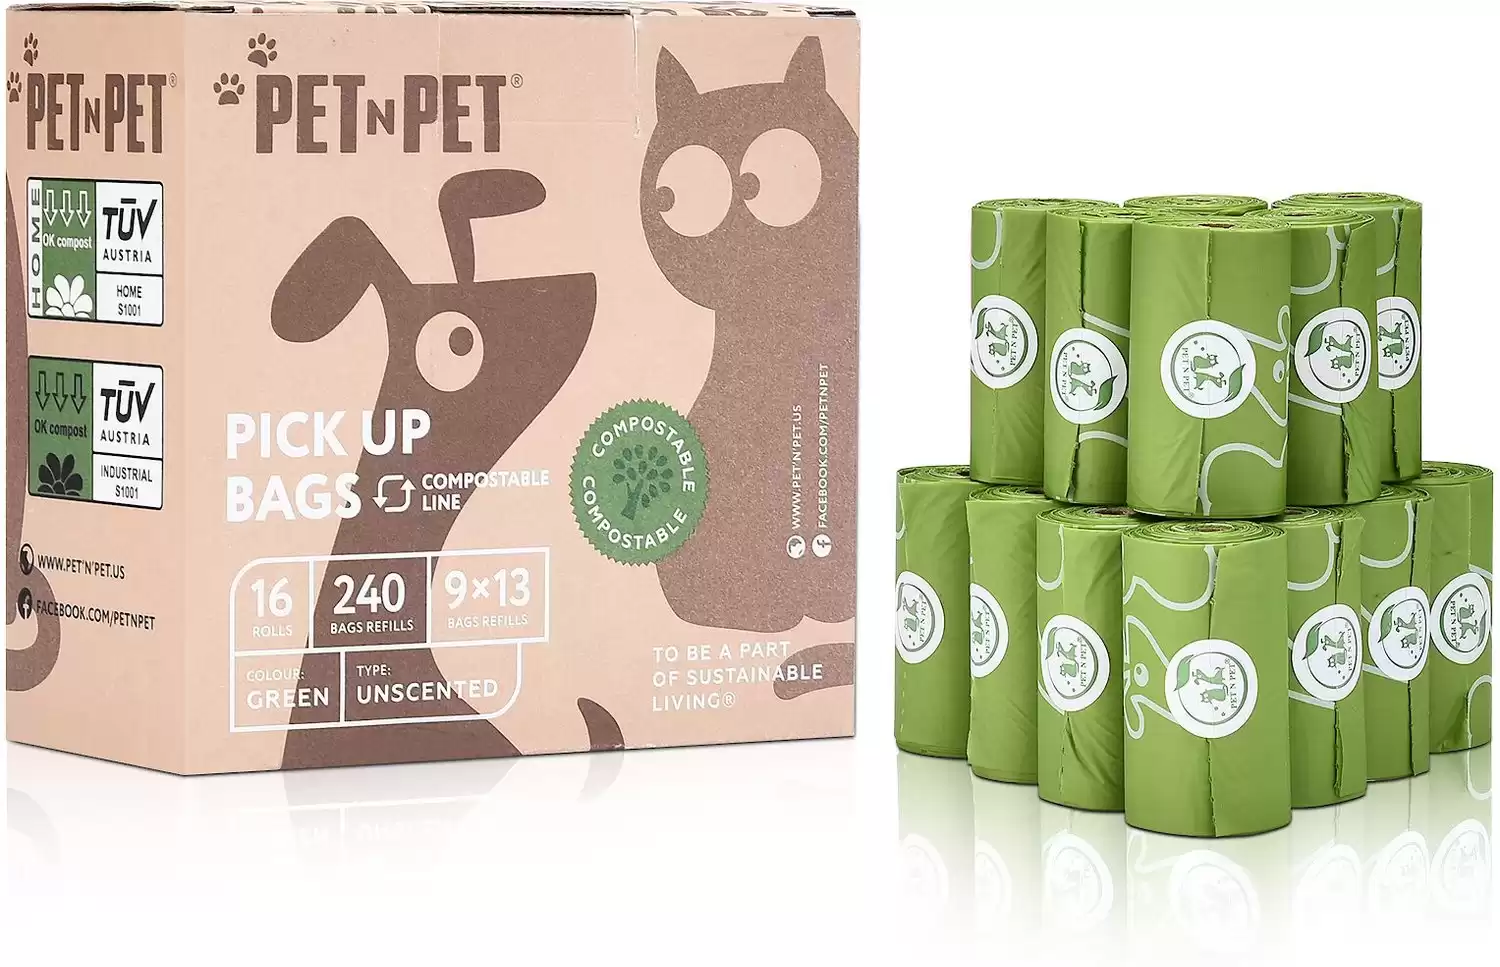 PET N PET Compostable Dog Poop Bags